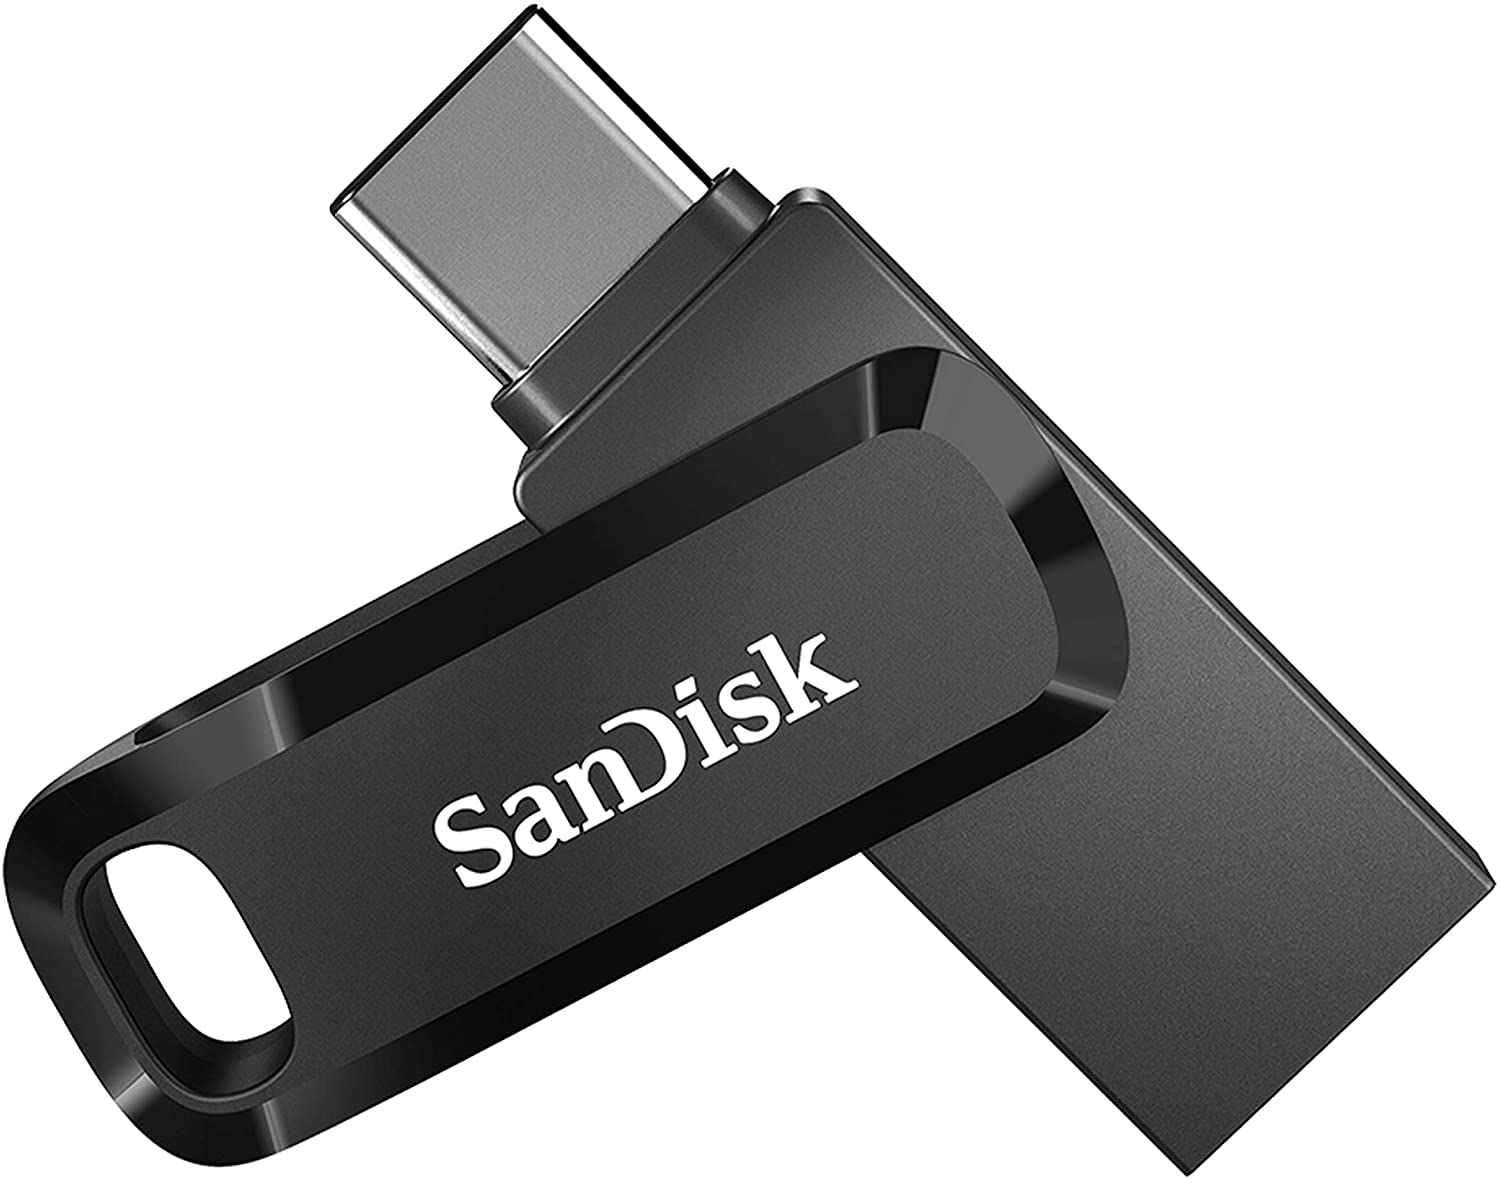 USBメモリー 32GB SanDisk Ultra Flair USB3.0対応 150MB s SDCZ73-032G-G46 海外パッケージ ゆうパケット送料無料